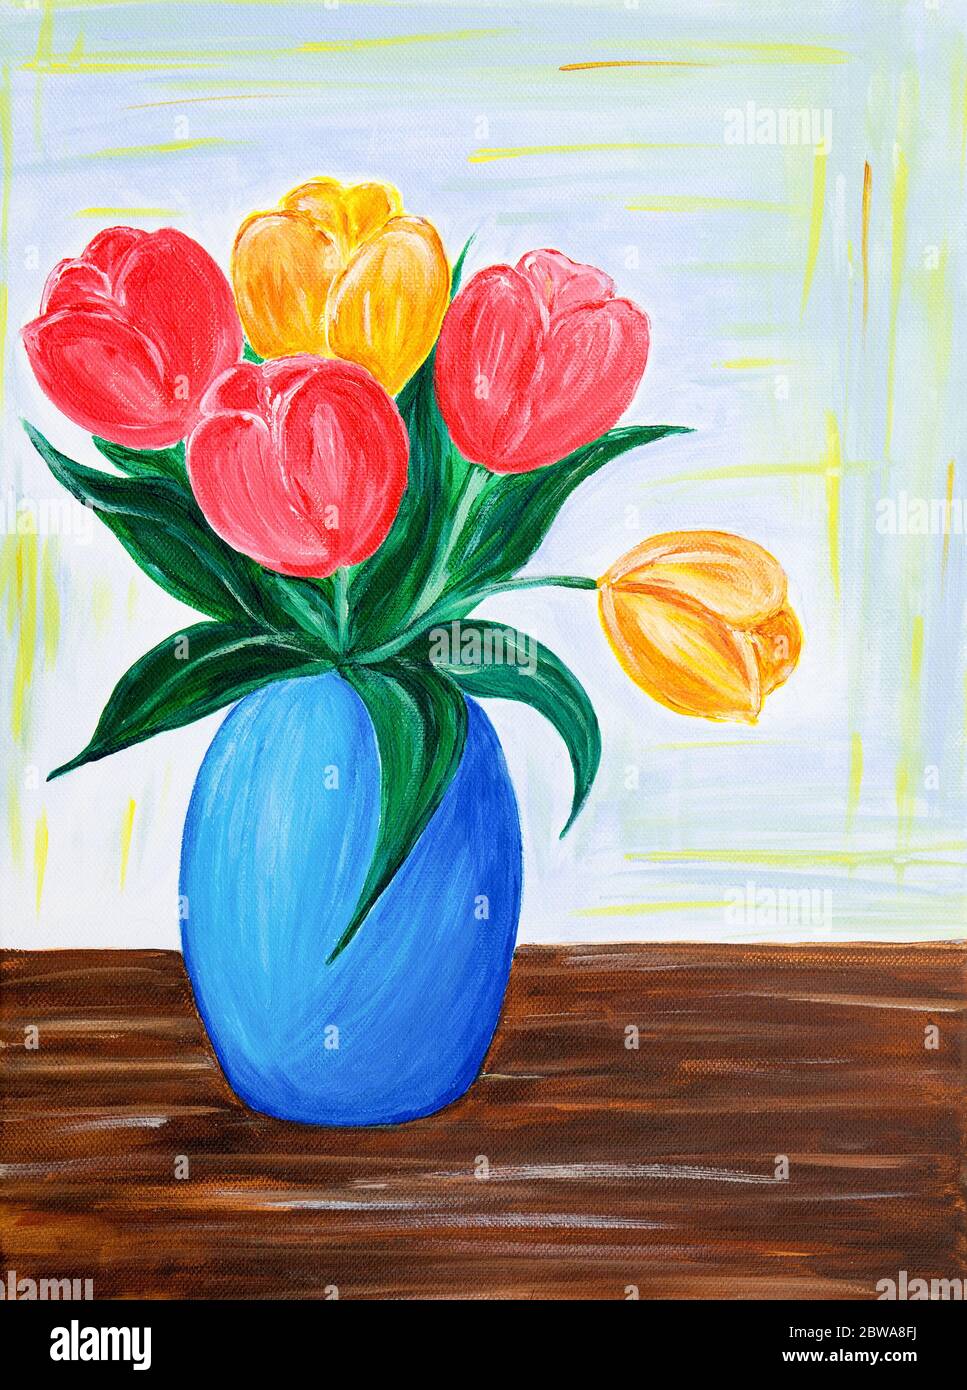 Originale pittura acrilica di fiori freschi bouquet.tulipani rossi e arancioni in un vaso su tela.Impressionismo moderno, modernismo, marinismo Foto Stock